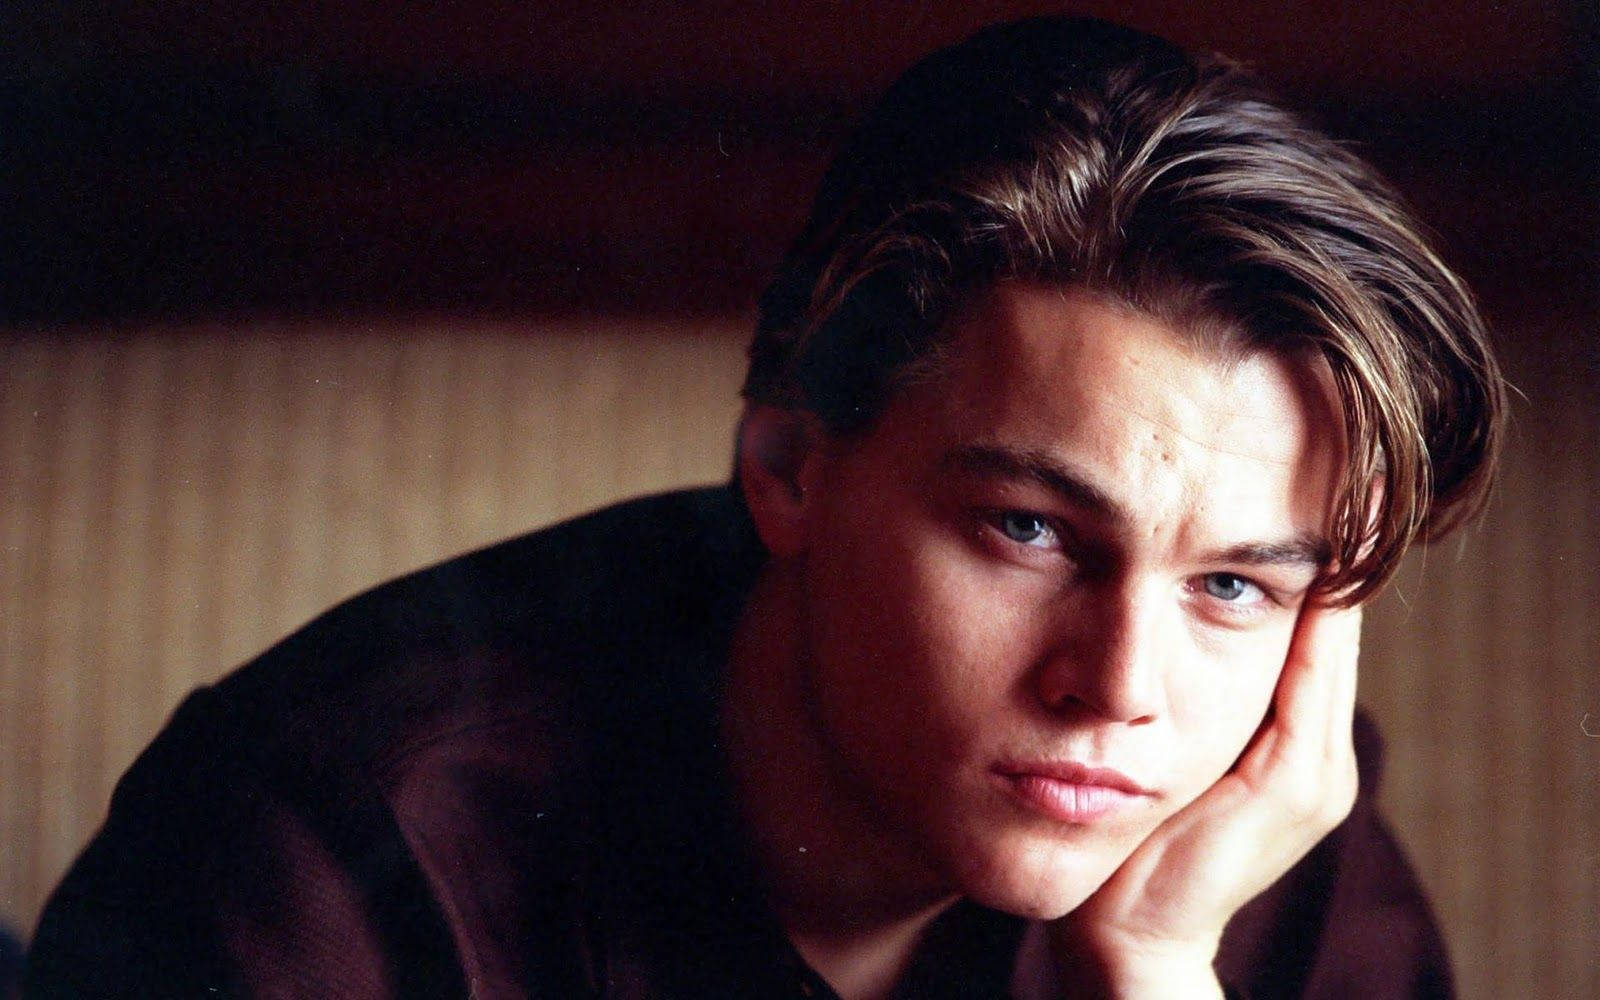 Leonardo Dicaprio Young And Fresh Background